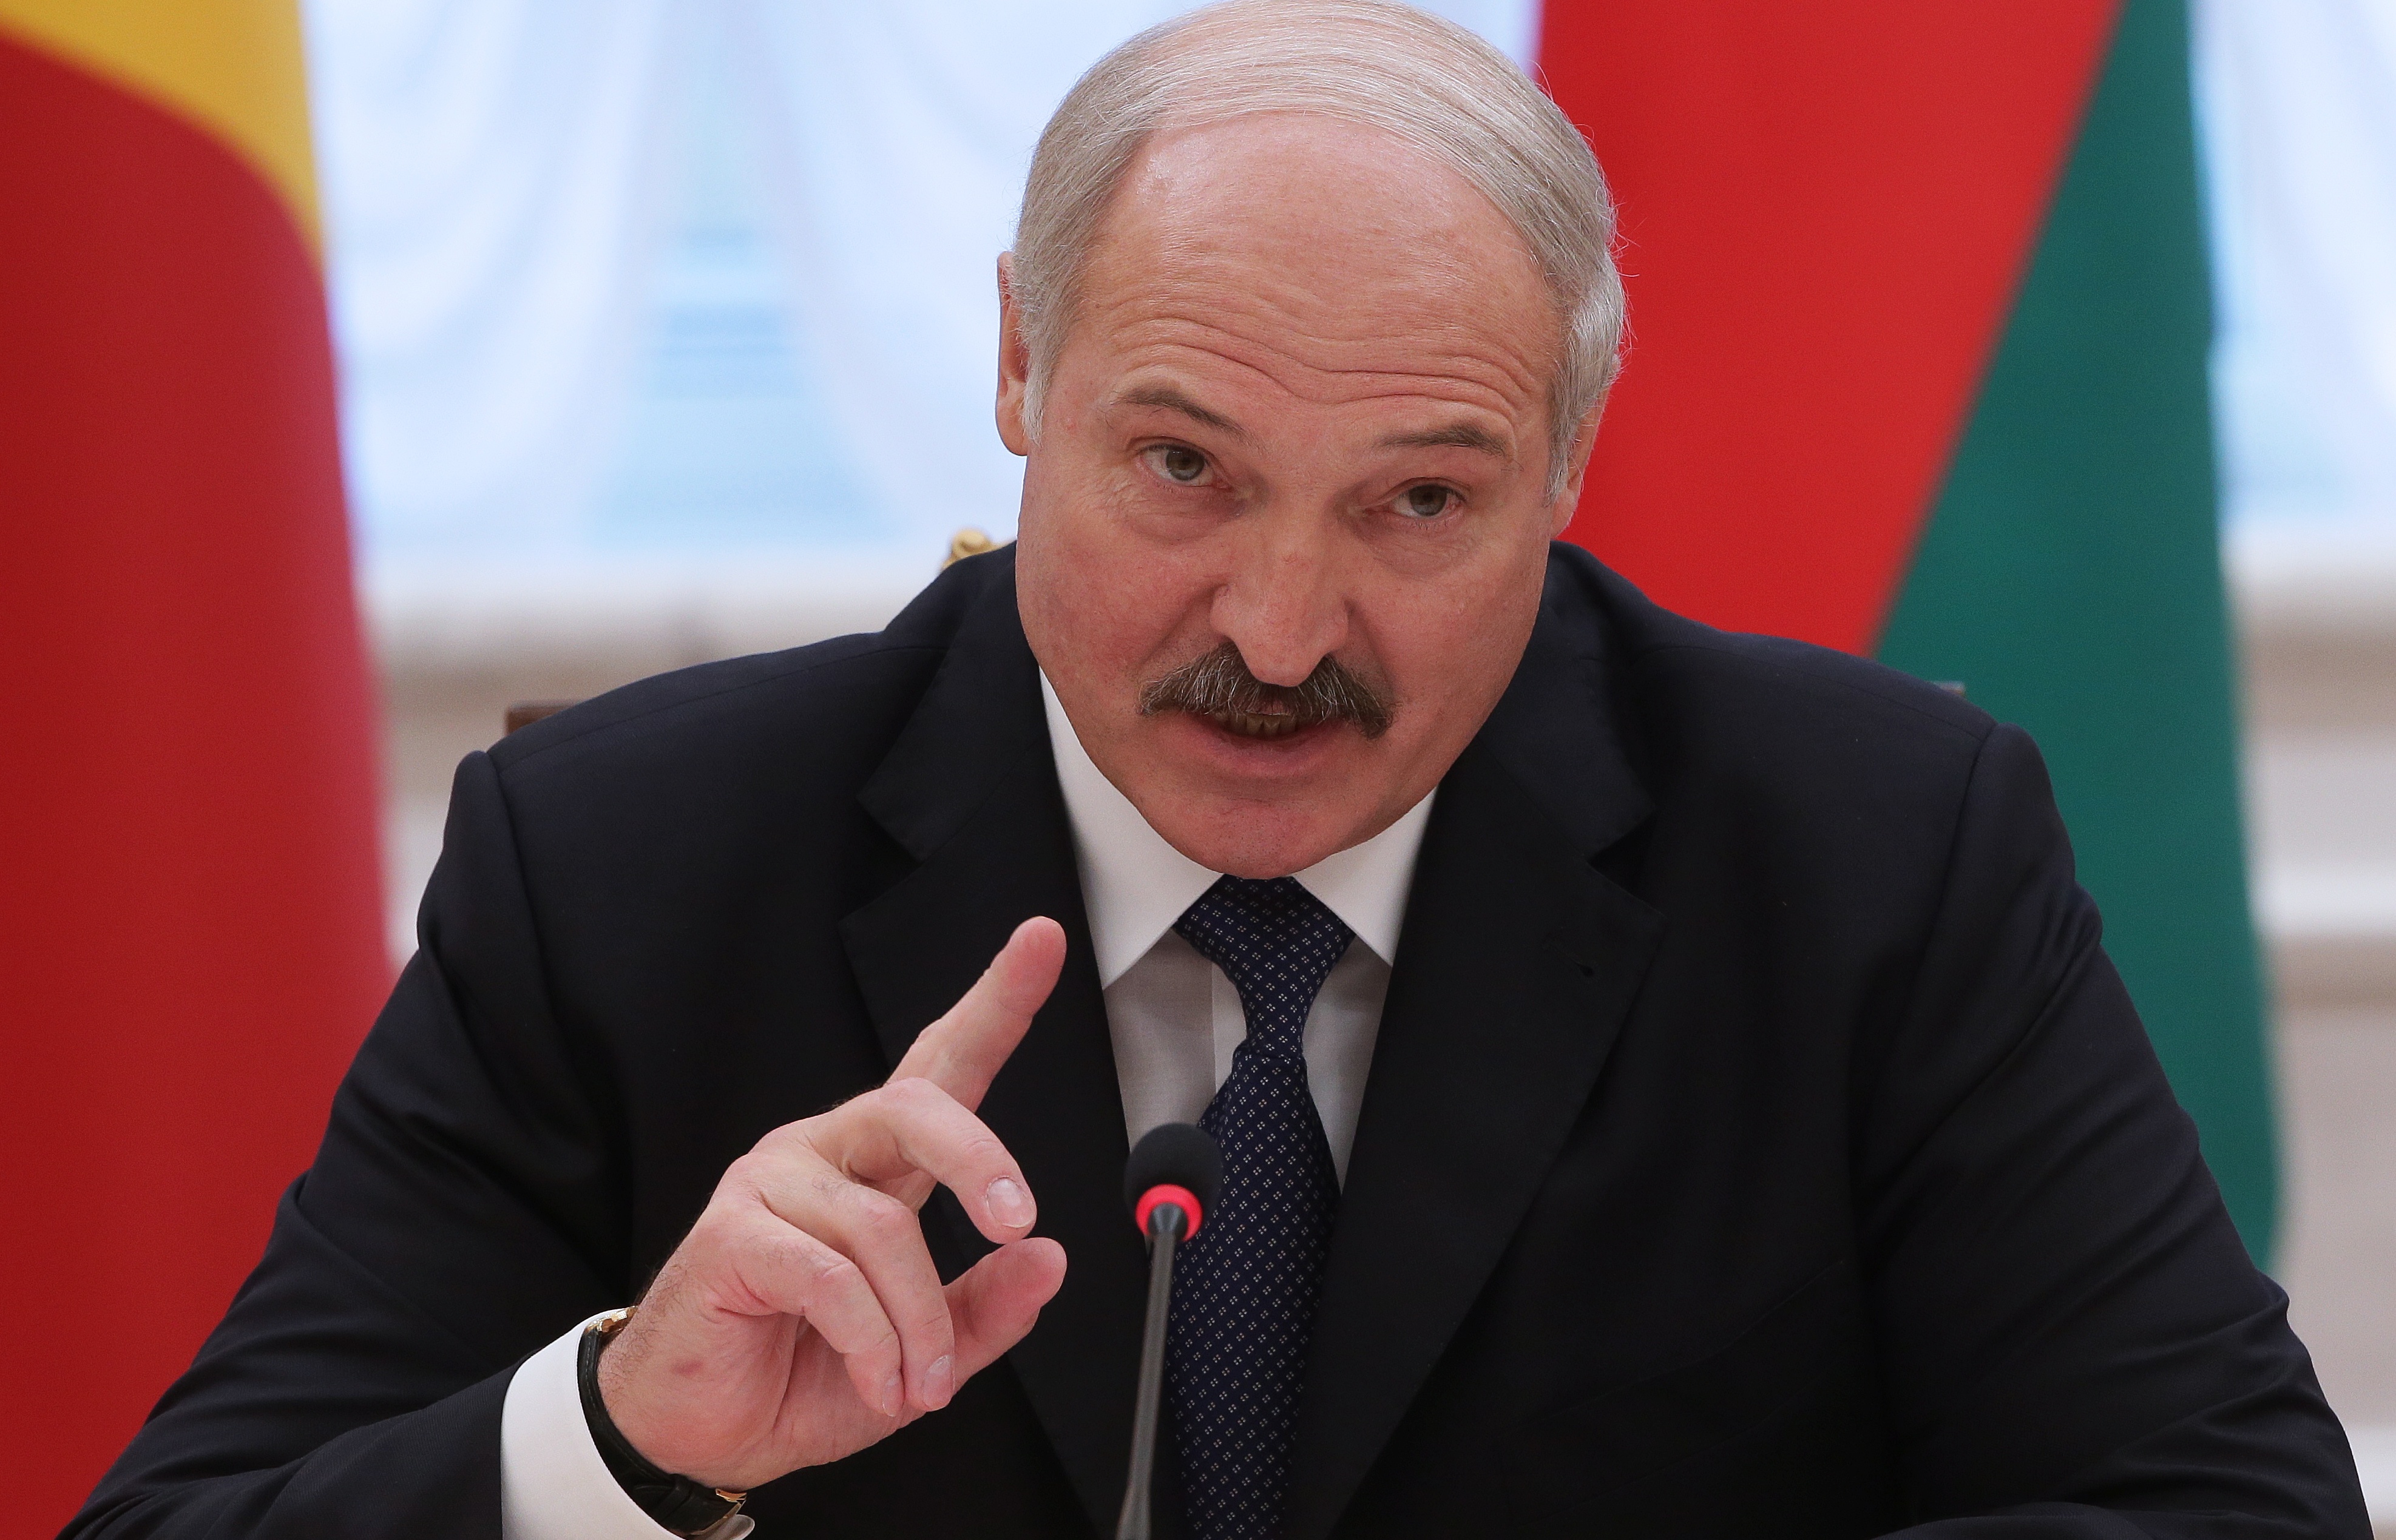 "Я не знаю, кому это надо", - Лукашенко жестко высказался в адрес России из-за проблем на "самой странной границе". Подробности